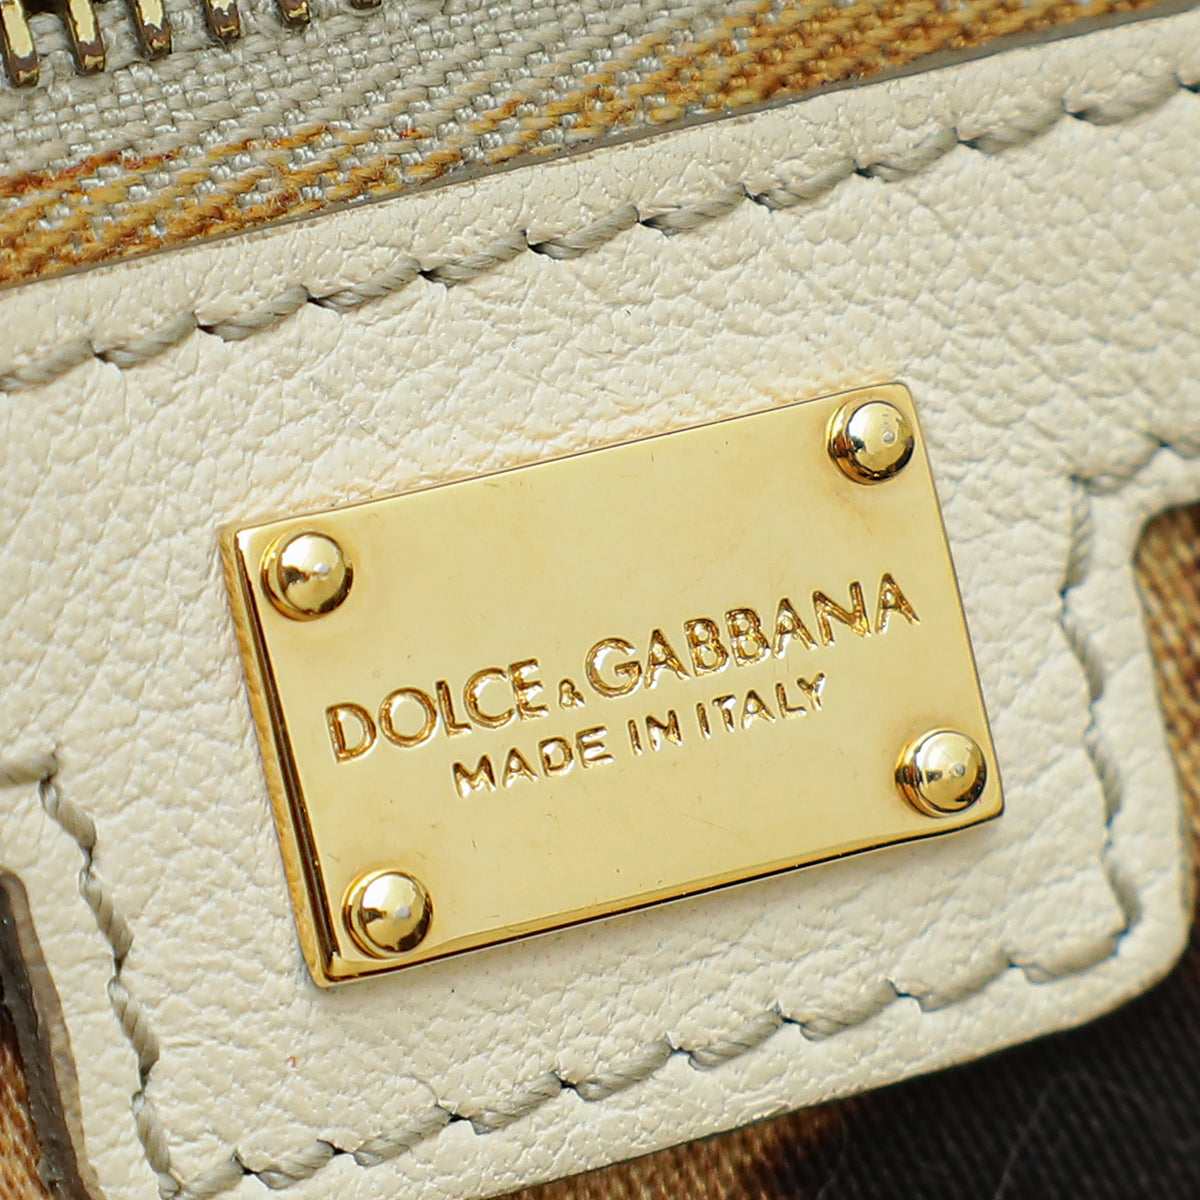 Dolce & Gabbana Bi-Color Miss Sicily Large Satchel Bag